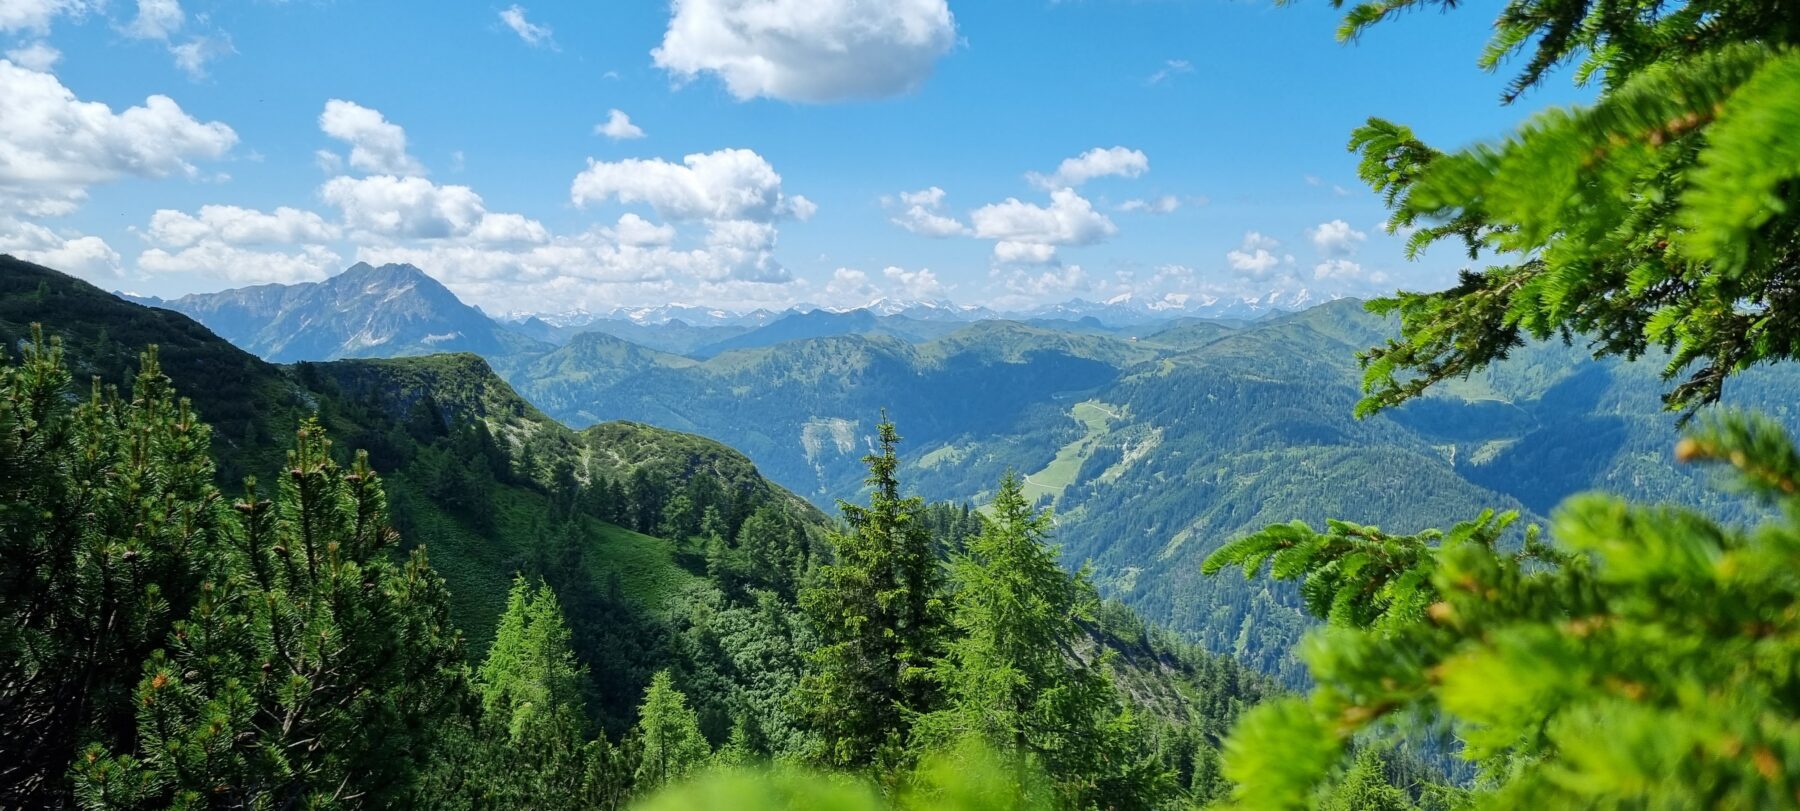 Het uitzicht tijdens de hike naar de Lackenkogel tijdens de Salzburger Gipfelspiel